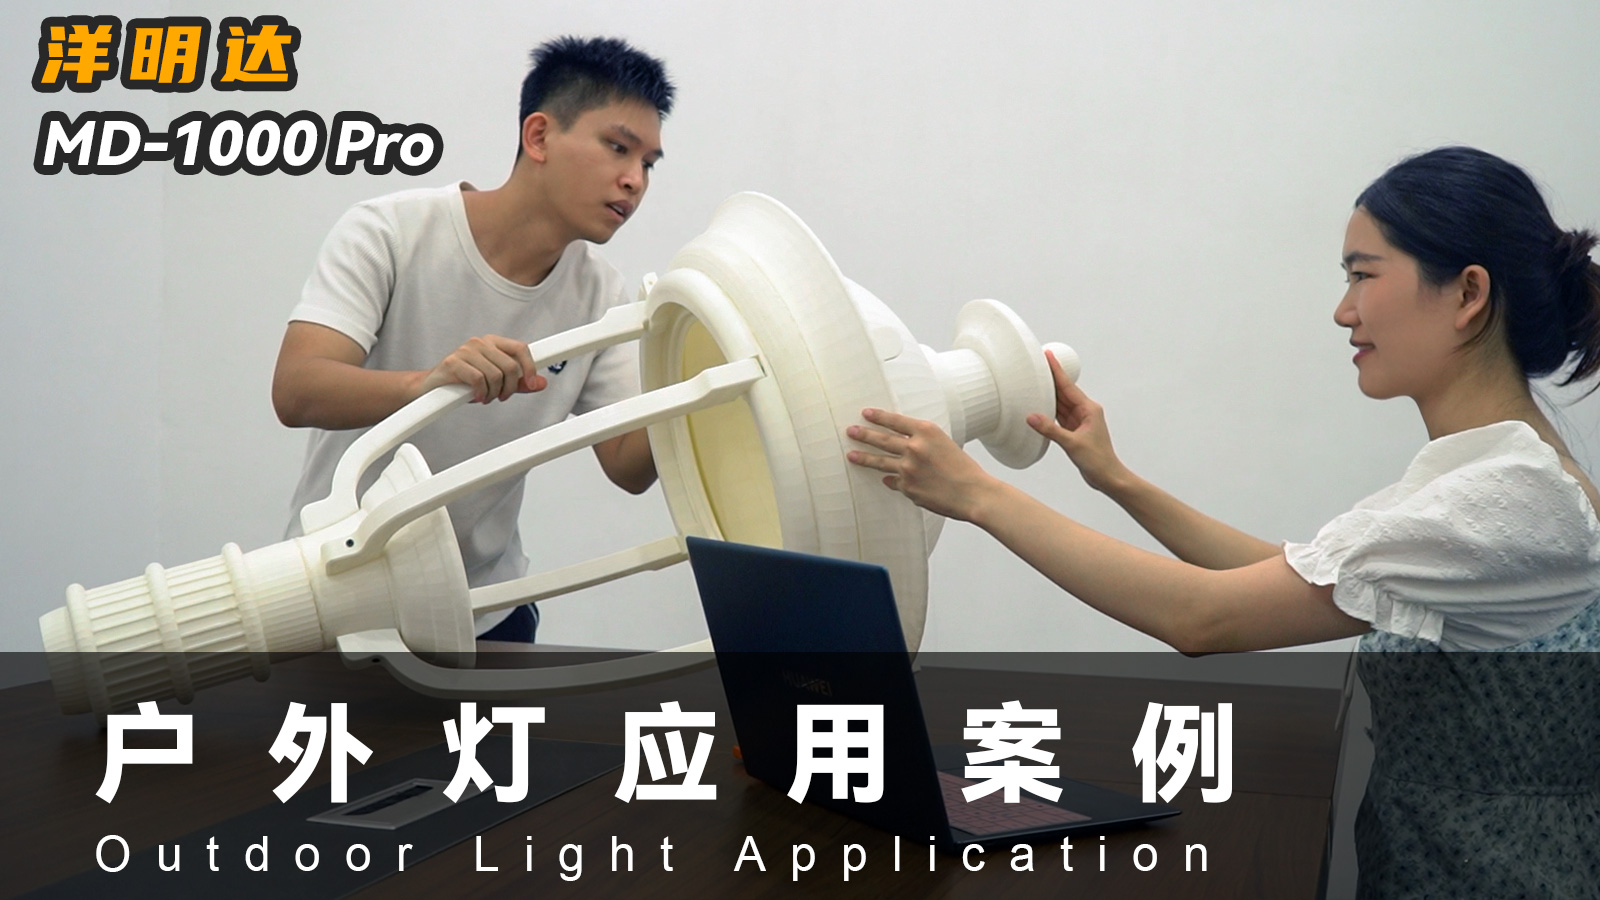 洋明达MD-1000 Pro 3D打印机可以应用到户外灯具行业吗？